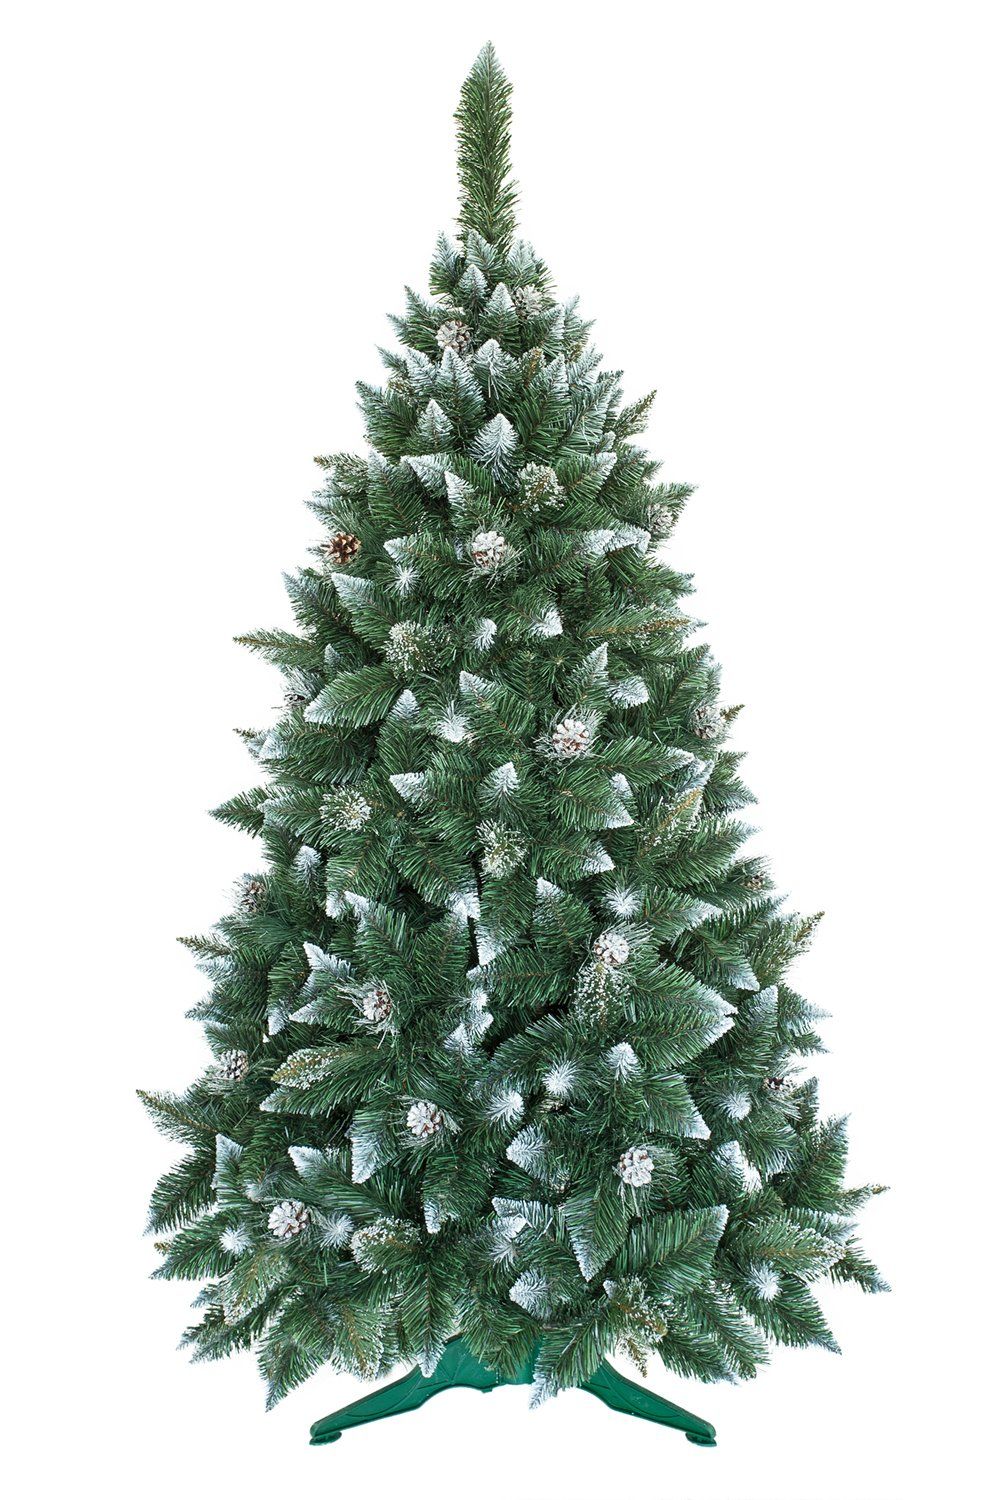 Umelý vianočný stromček Borovica Strieborná s kryštálmi ľadu 250cm